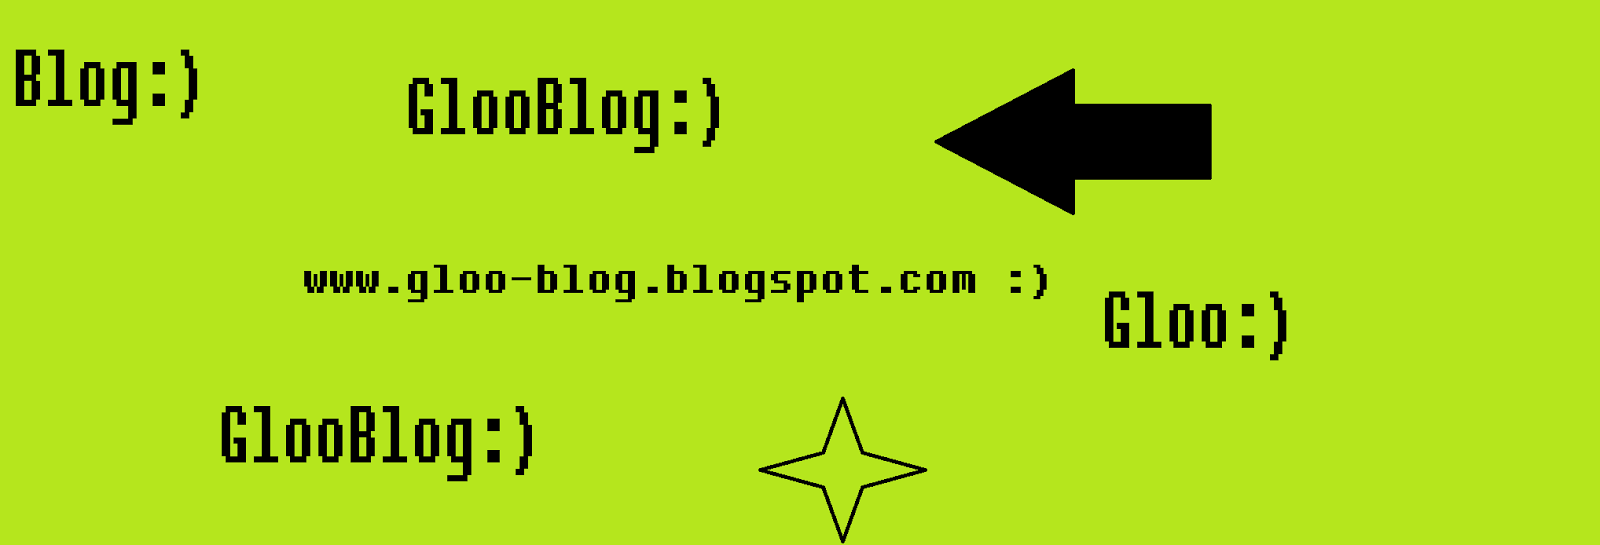 GlooBlog